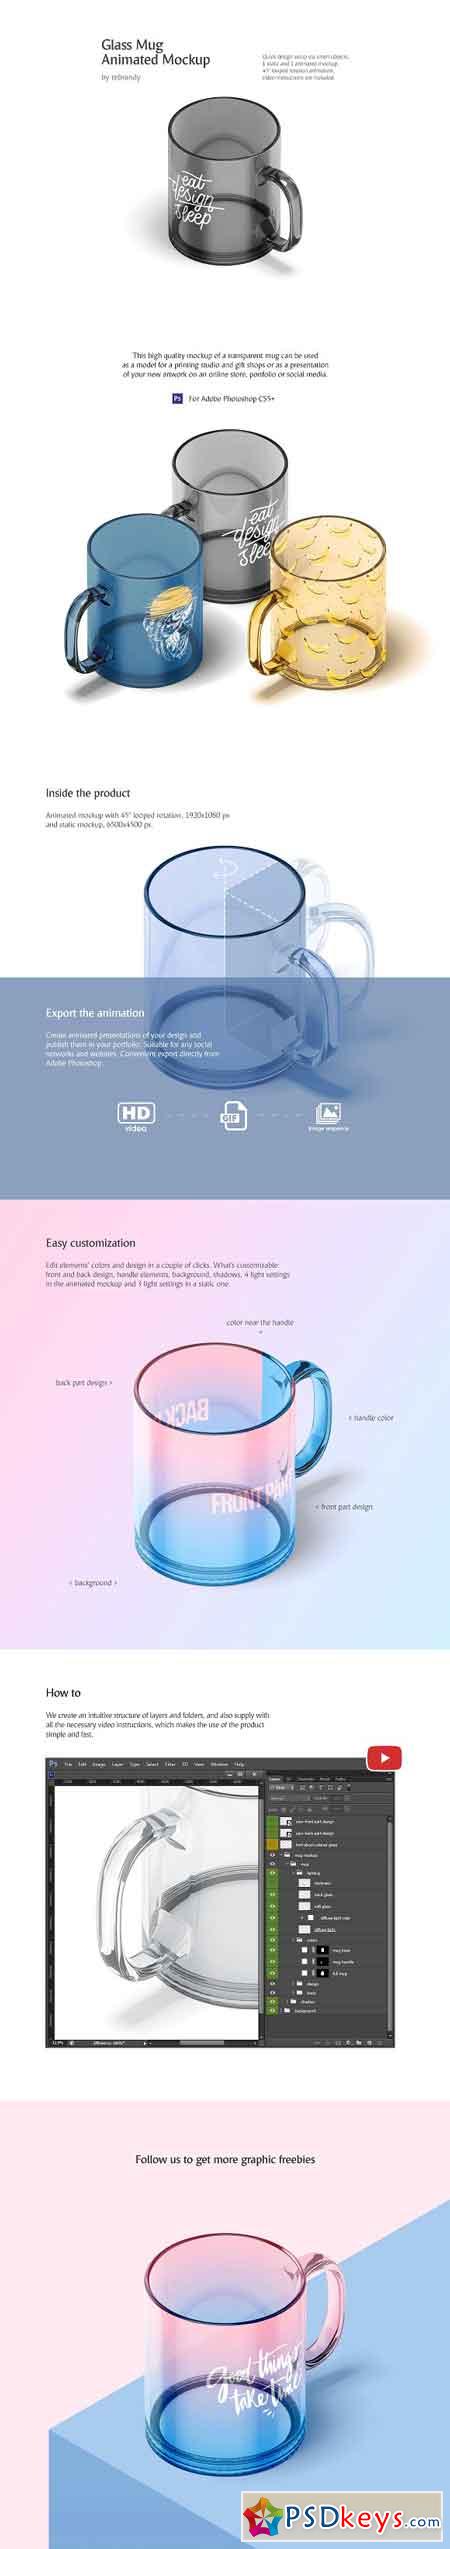 New Glass Mug Animated Mockup 2521433